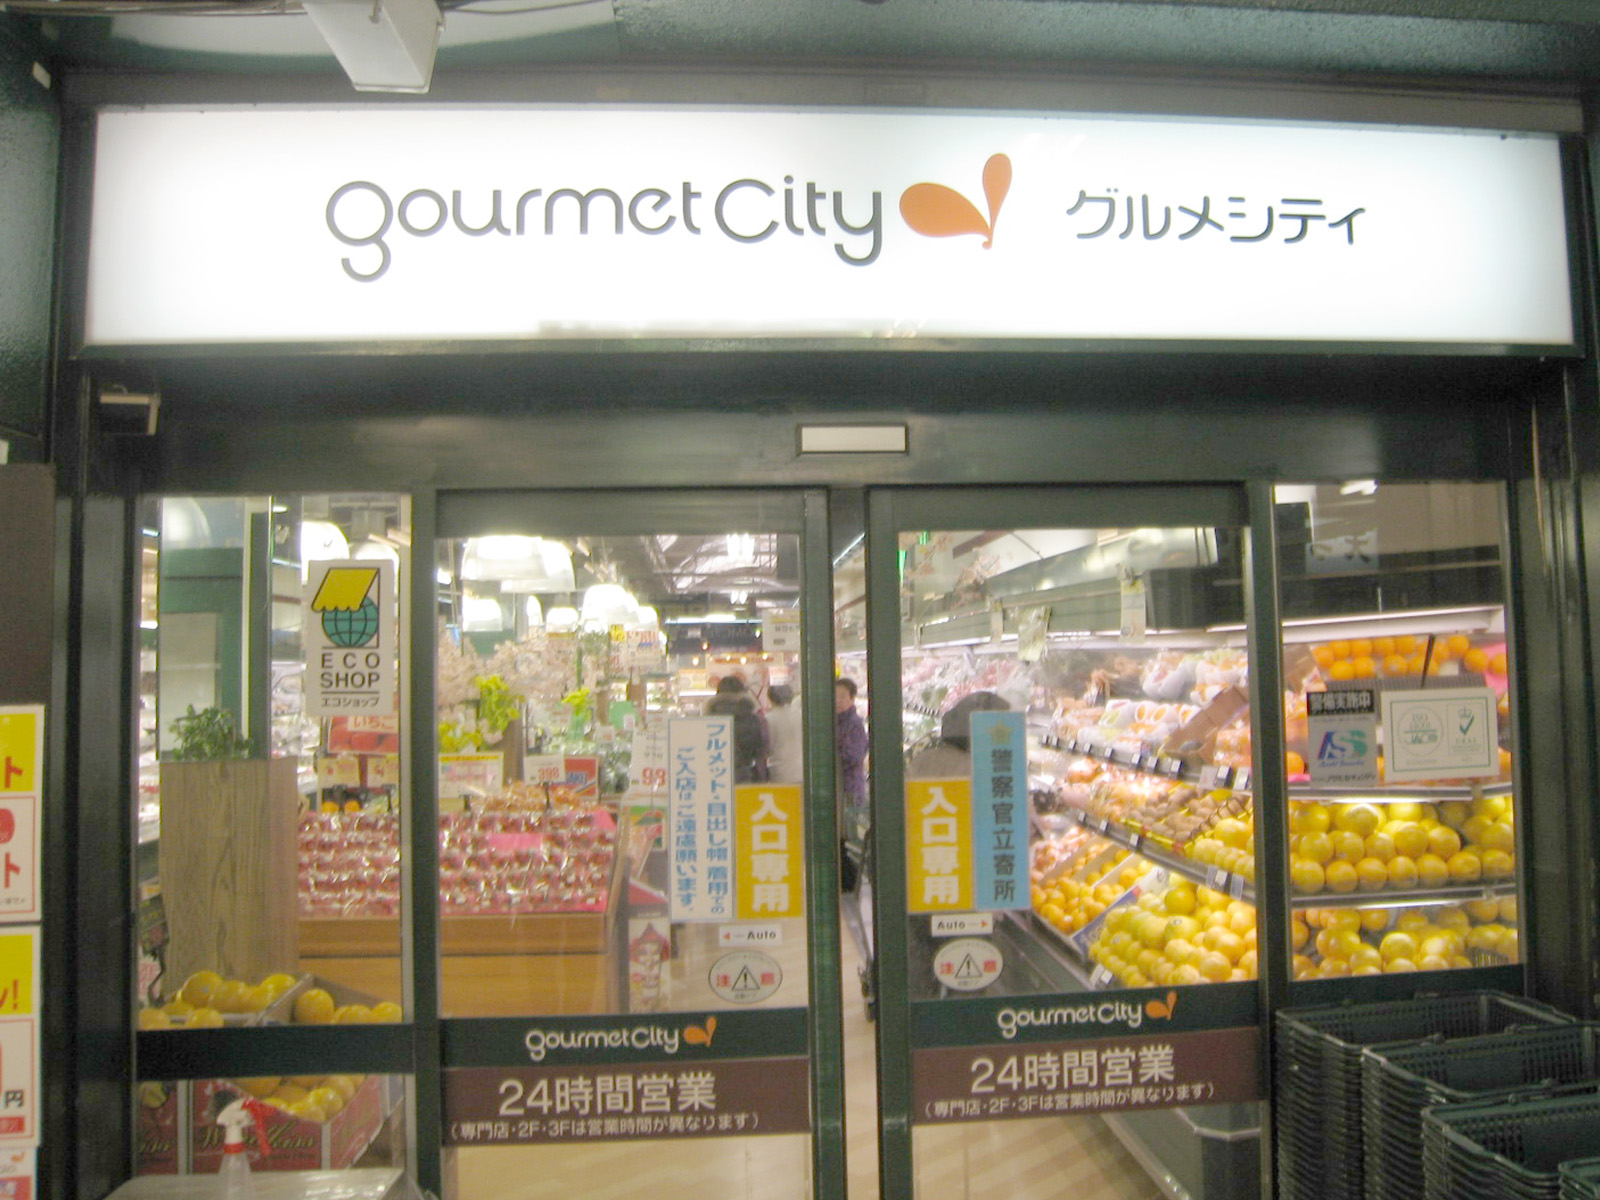 Supermarket. 589m until Gourmet City Shonai store (Super)